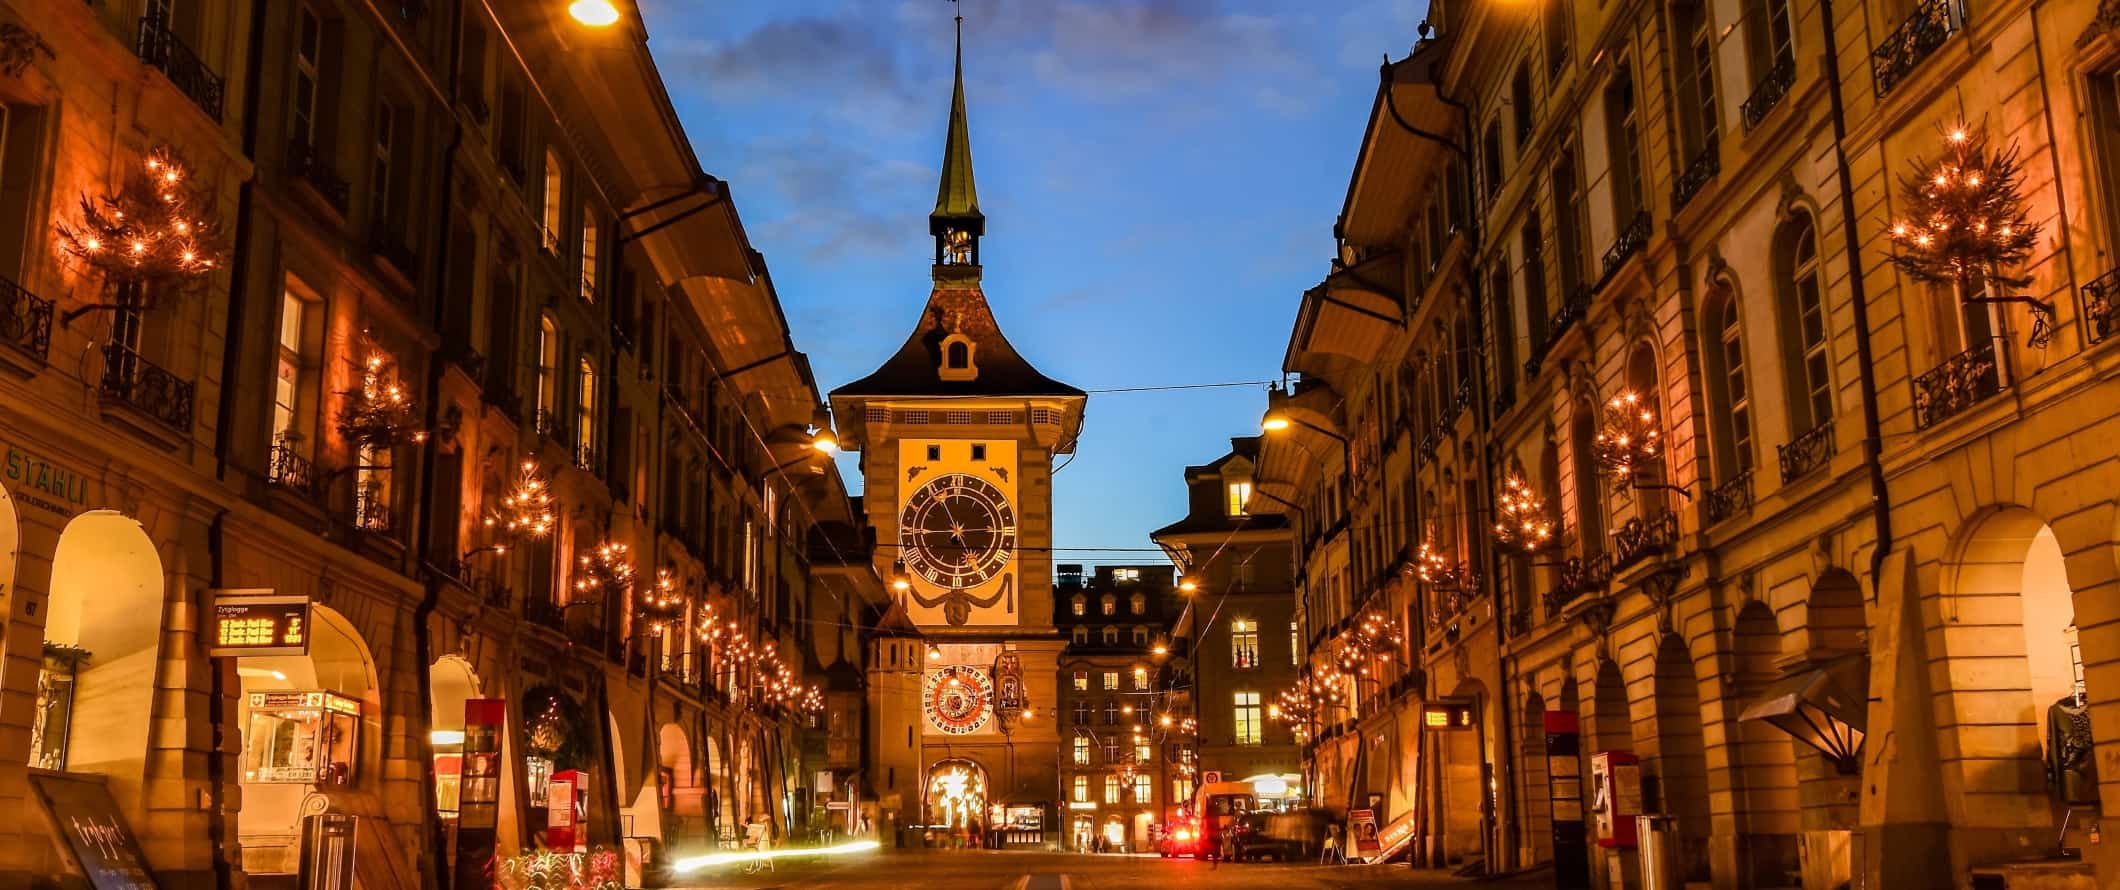 Rua espaçosa com uma histórica torre do relógio no final iluminada à noite em Berna, Suíça